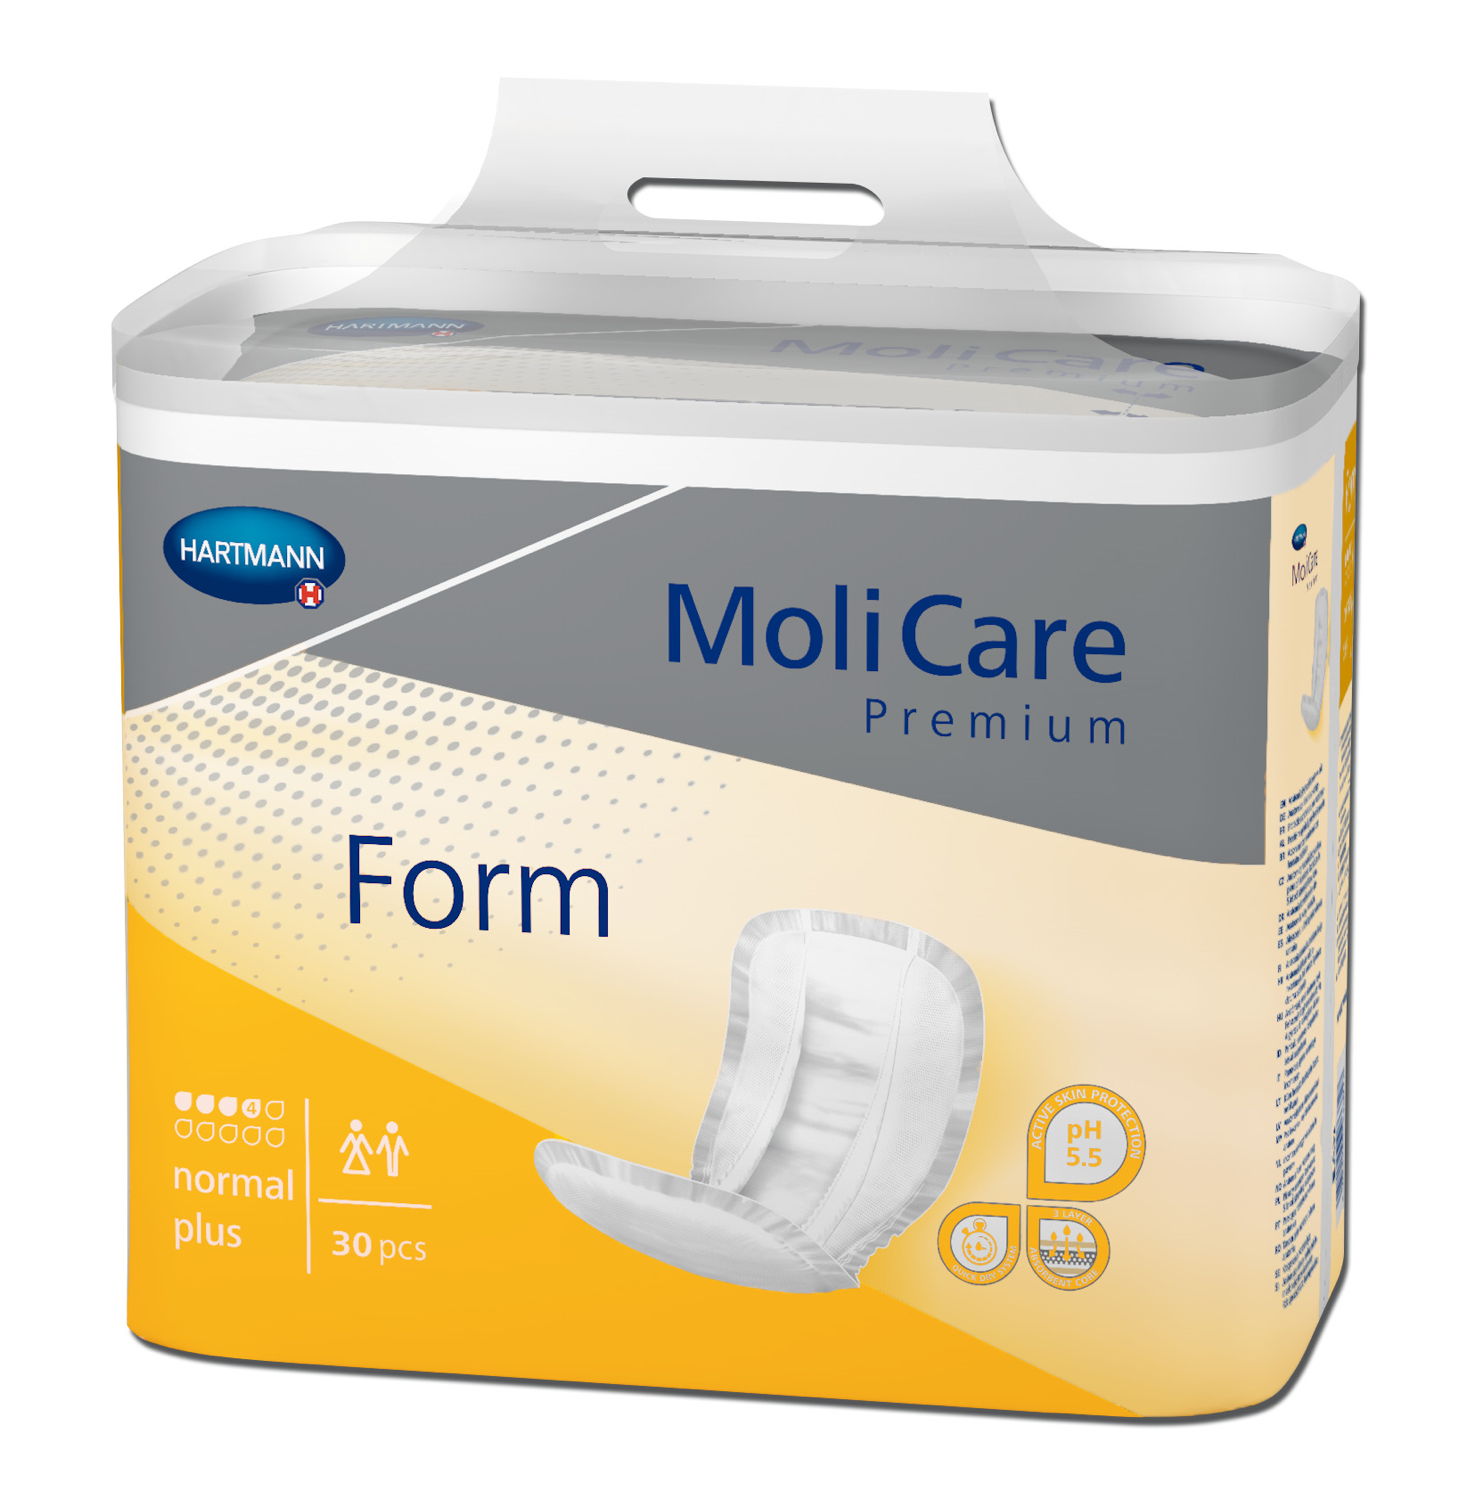 MoliCare Premium Form normal plus